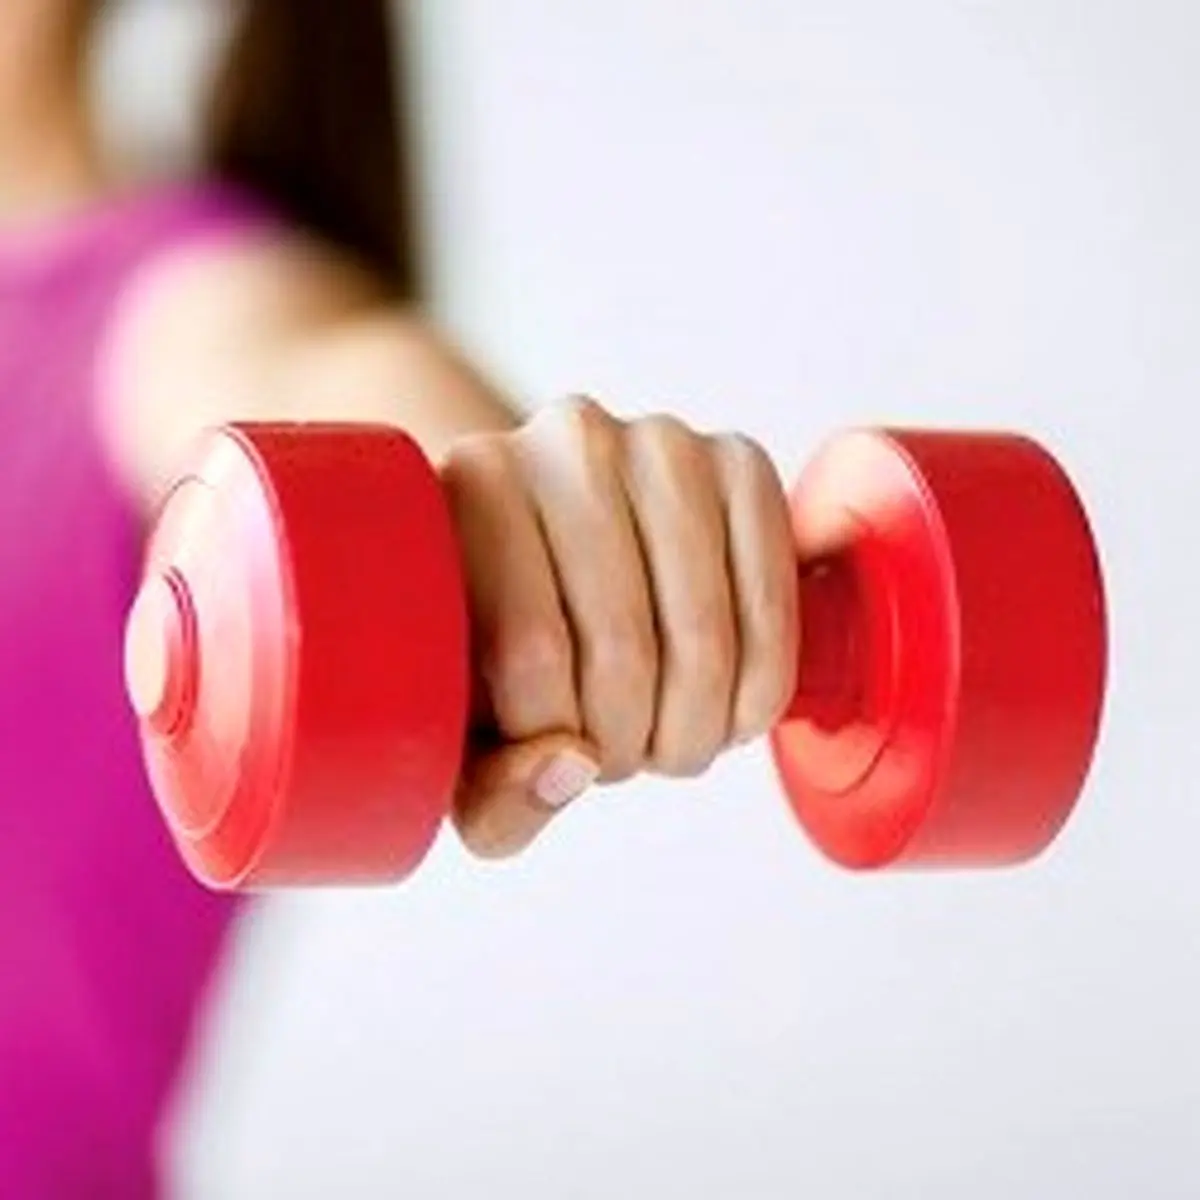  ورزش با وزنه برای خانم ها خوب است یا بد؟